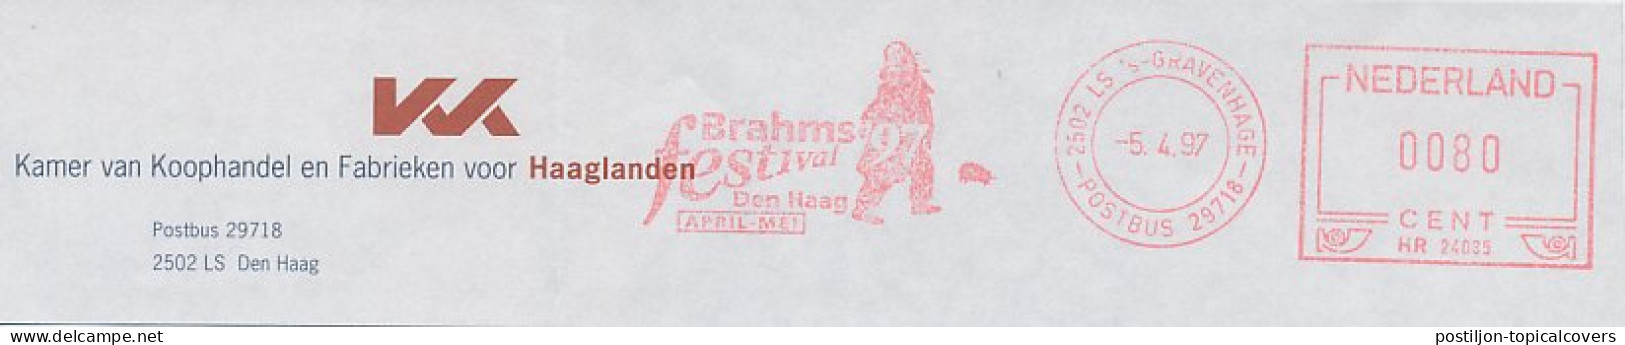 Meter Top Cut Netherlands 1997 Brahms Festival 1997 - Composer - Musik